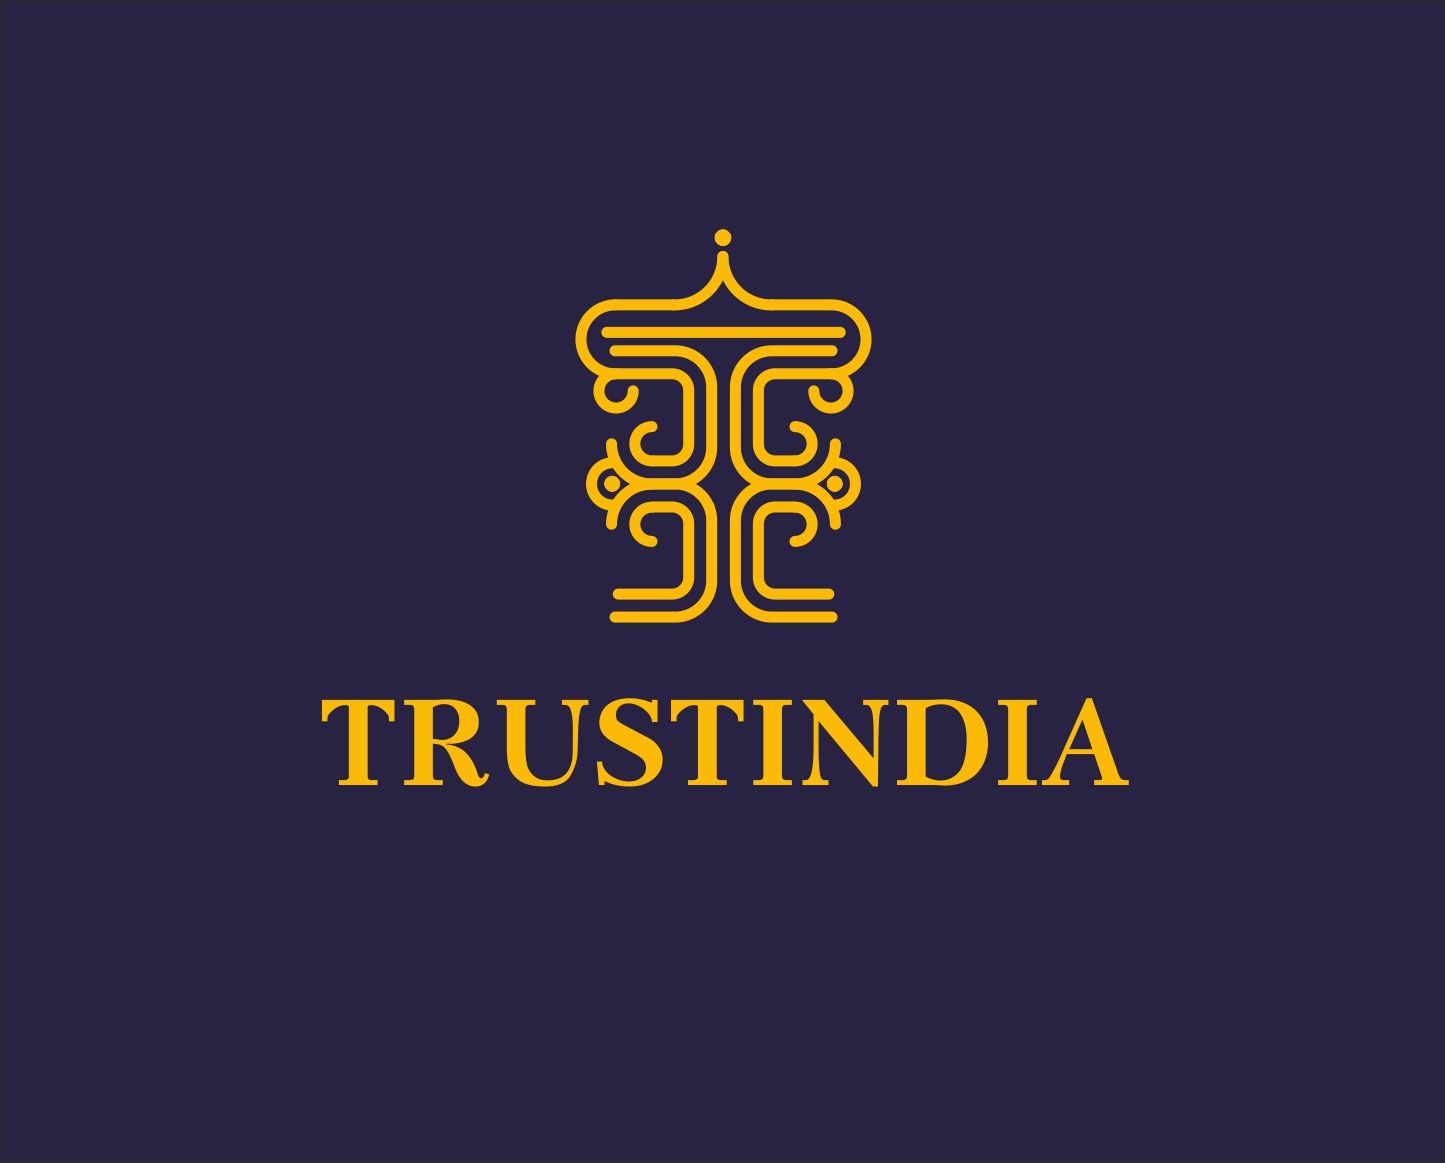 Логотип сайта об Индии, инд. товарах, здоровье - дизайнер art-valeri